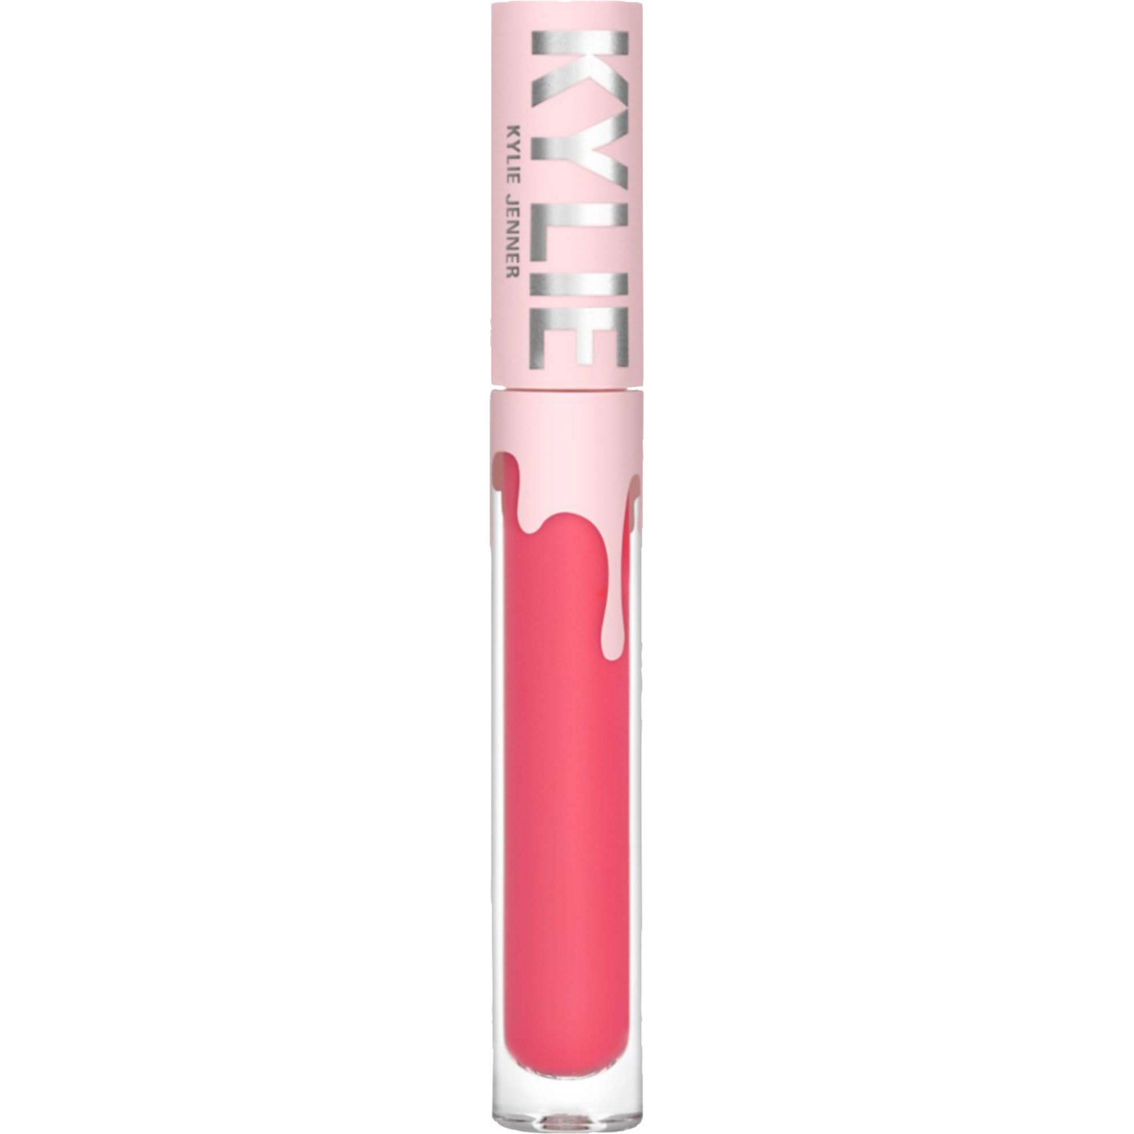 Kylie Cosmetics Velvet Lip Kit - Image 2 of 4